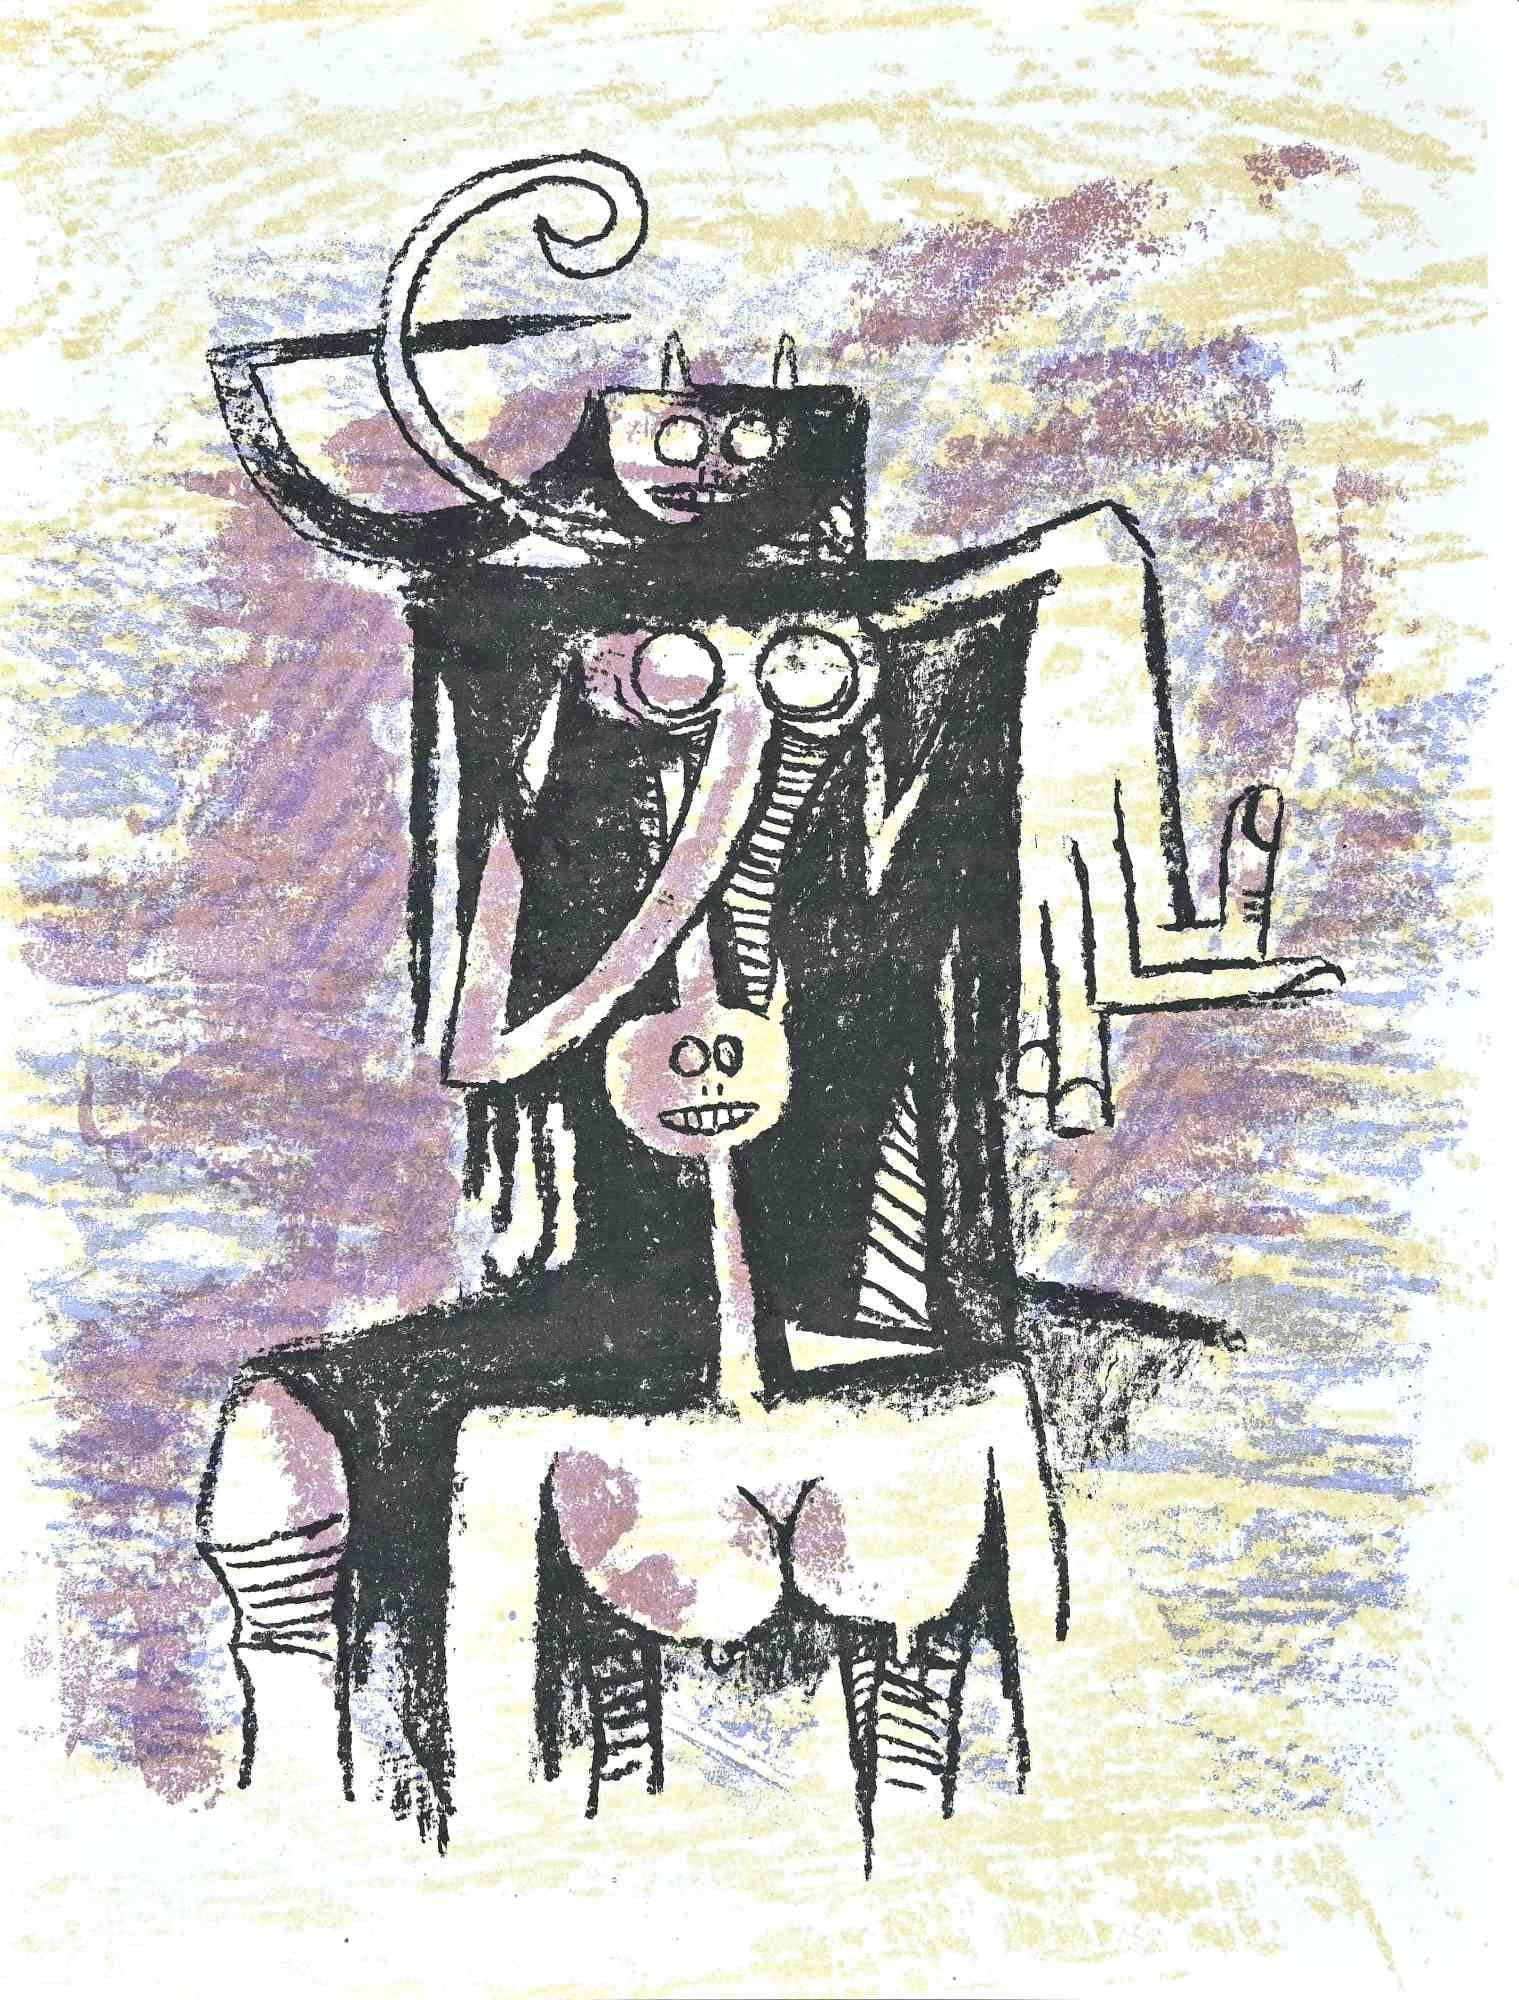 Sans titre est une lithographie réalisée par l'artiste.  L'artiste cubain Wifredo Lam (Sagua la Grande, 1902 - Paris, 1982). 

Cette lithographie en couleur sur papier vélin, a été éditée par la revue française "XXe Siécle", et publiée sur le